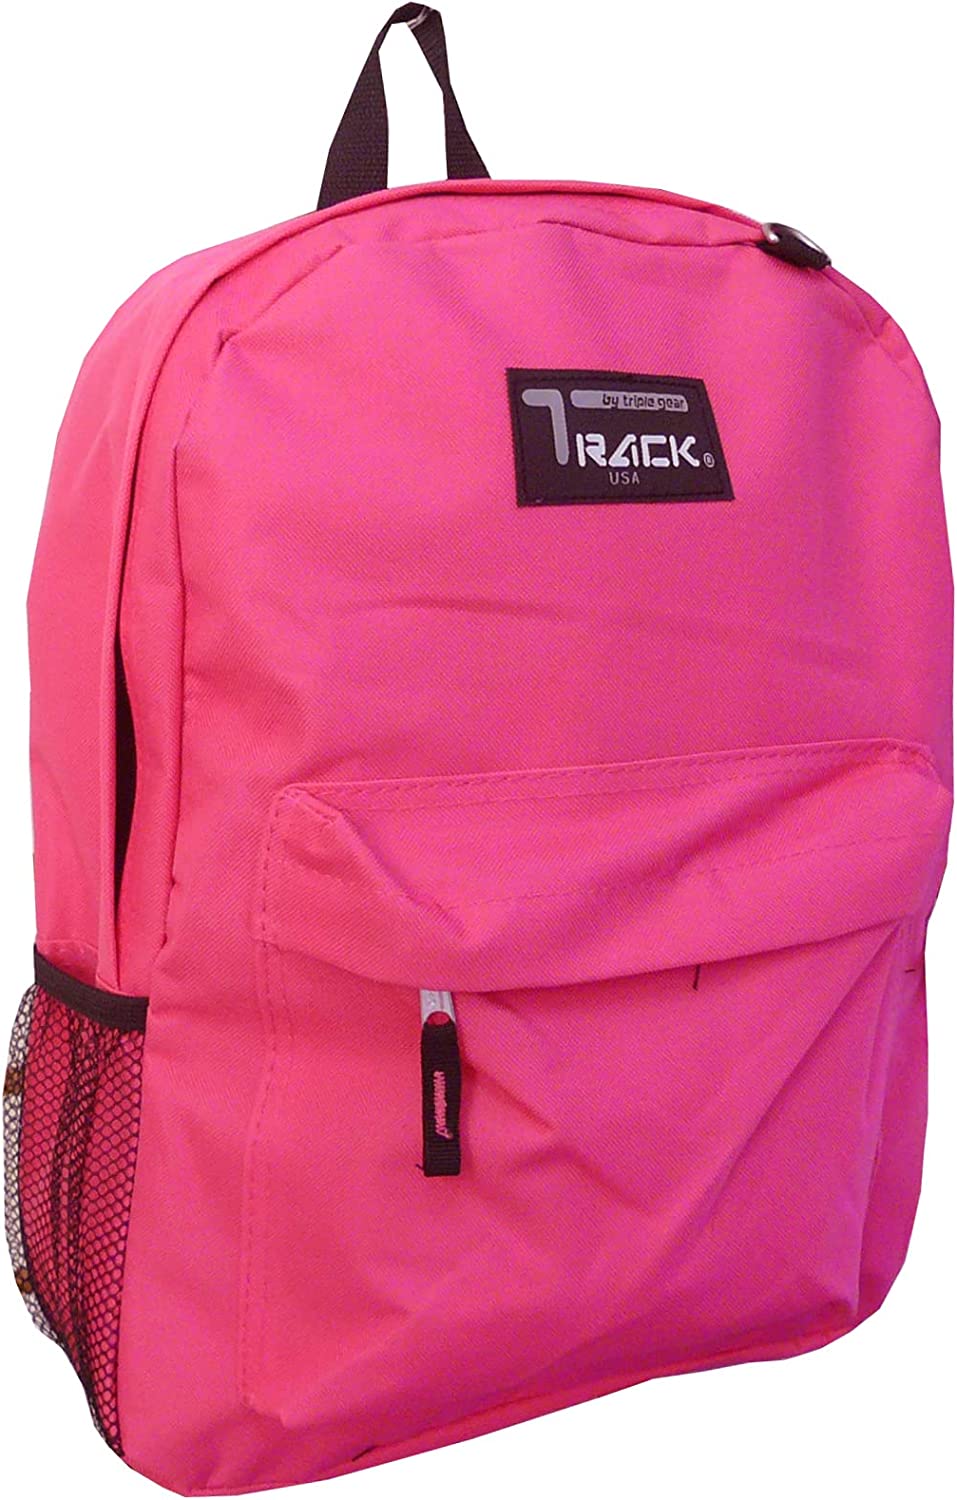 Track Backpack Classic TB205 (Fuschia)